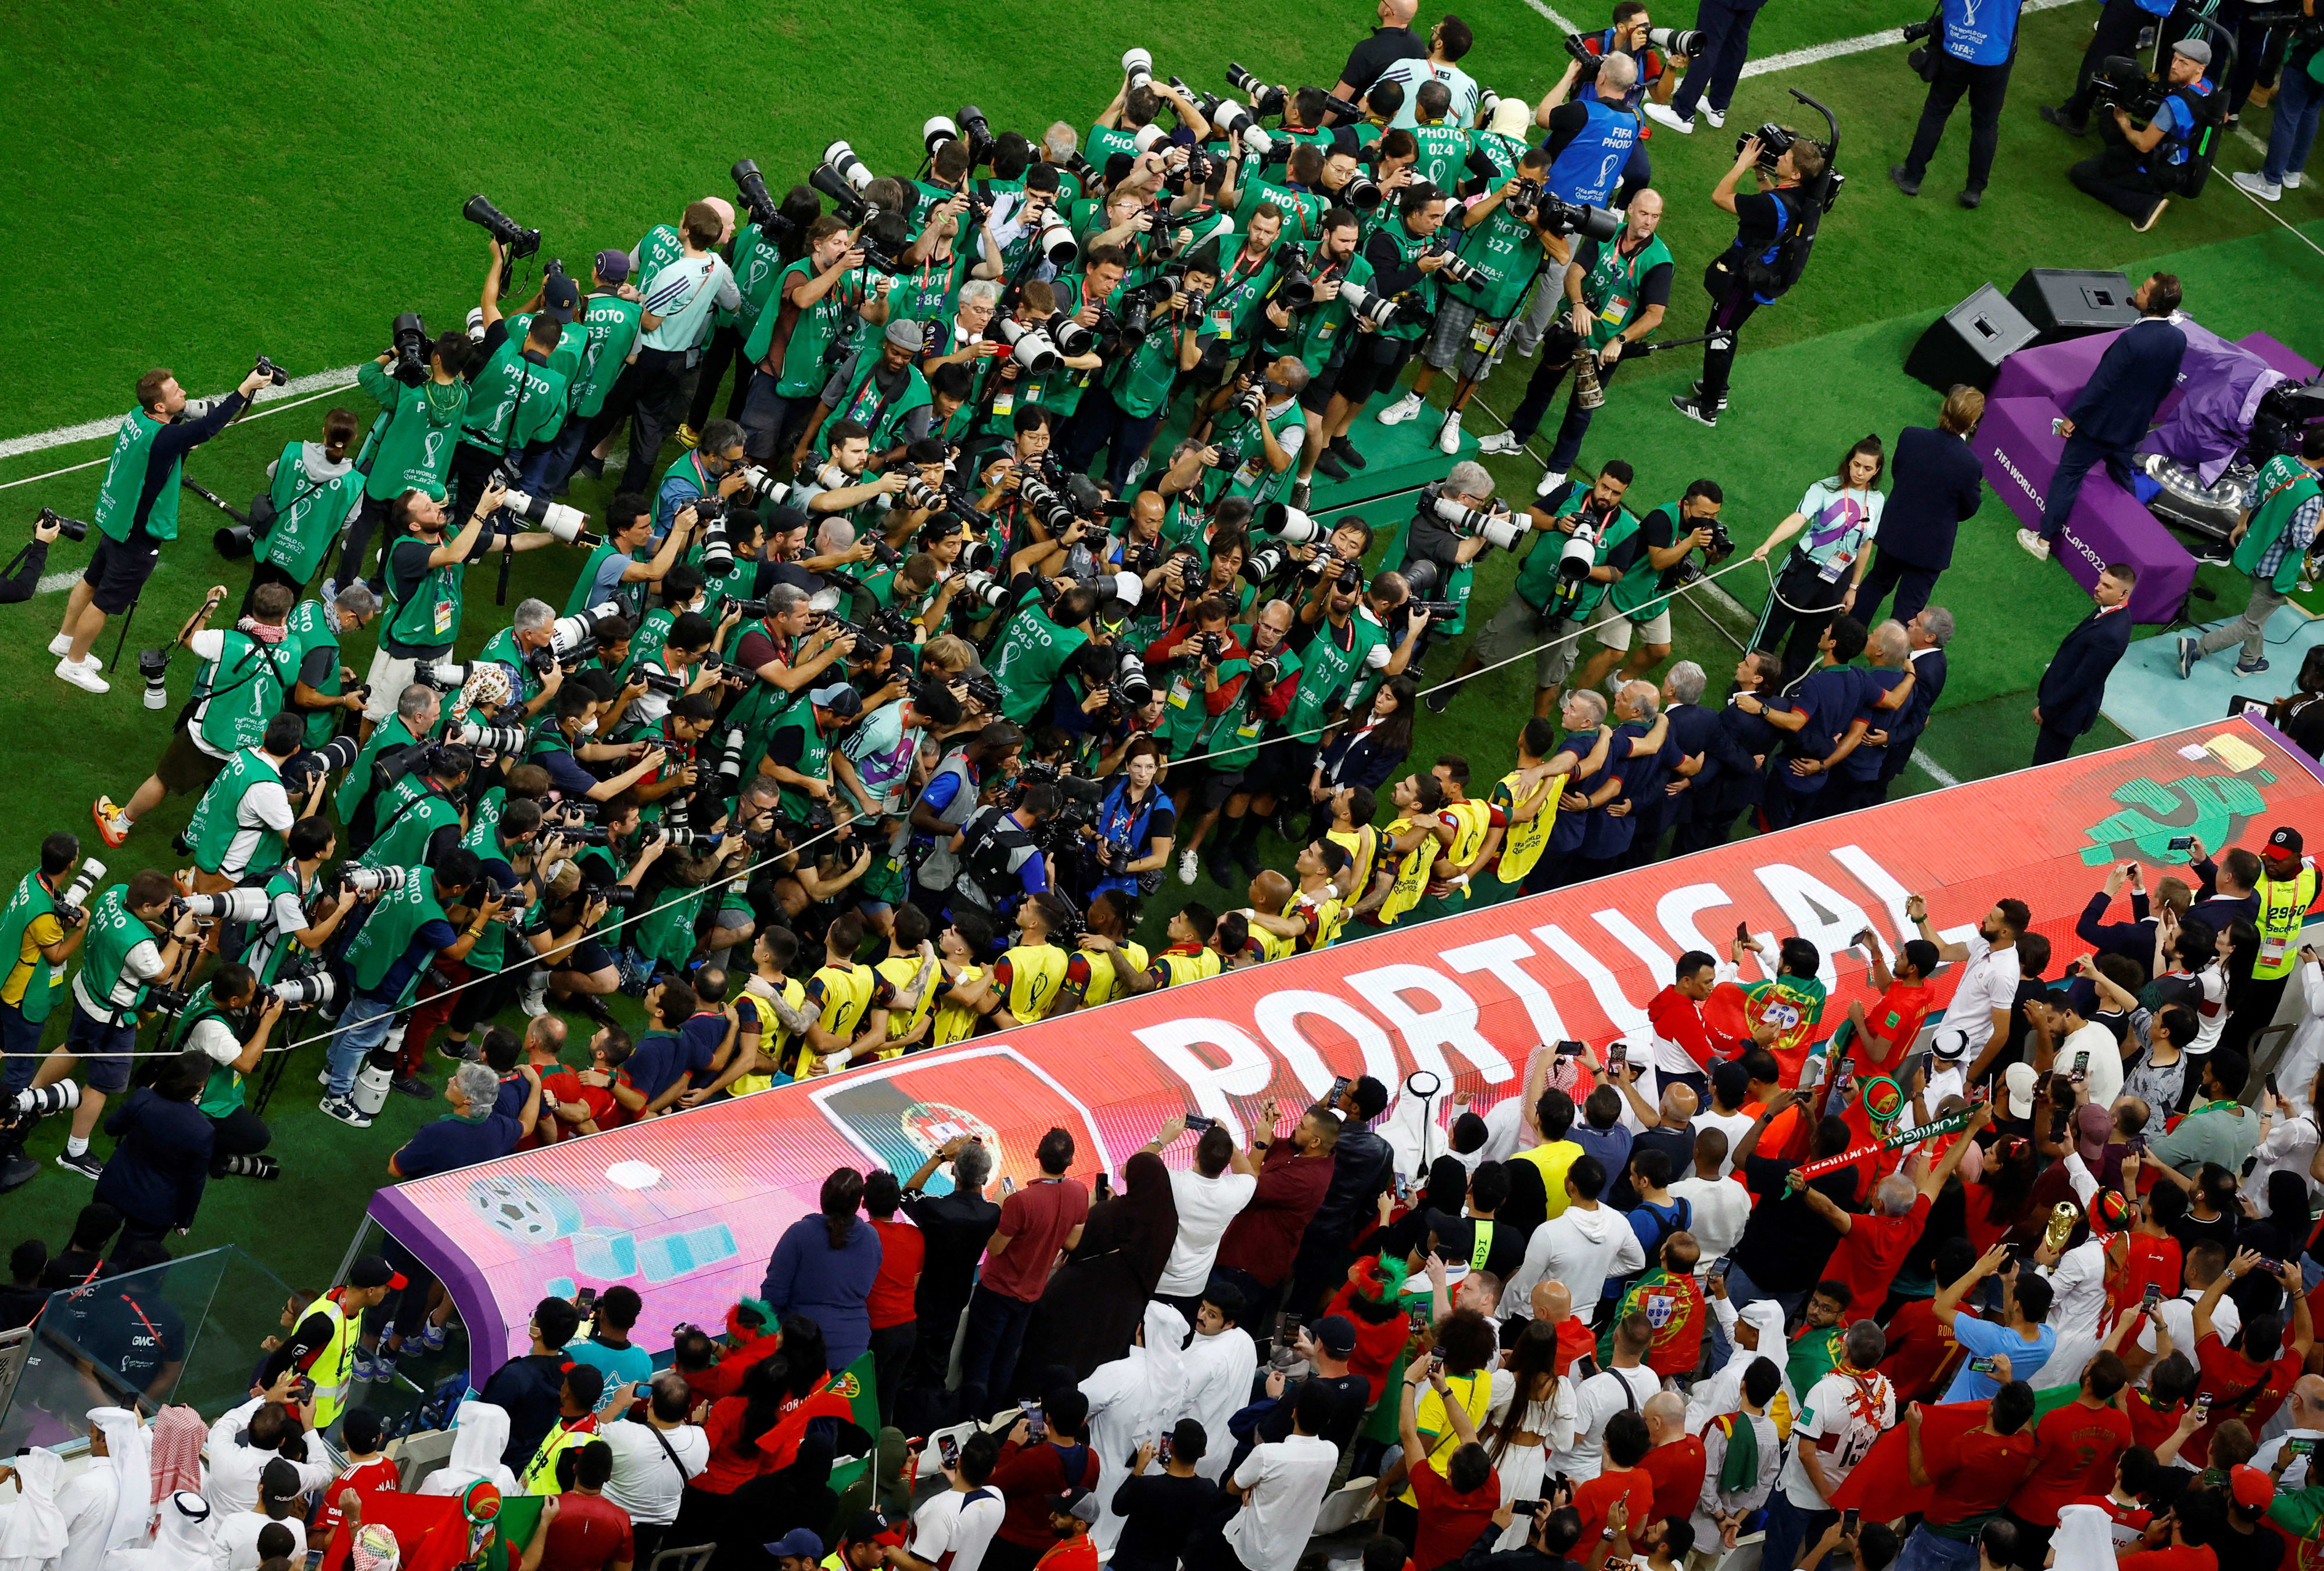 הצלמים לפני המשחק מצלמים את רונאלדו על הספסל ולא את שחקני נבחרת פורטוגל בזמן ההמנונים